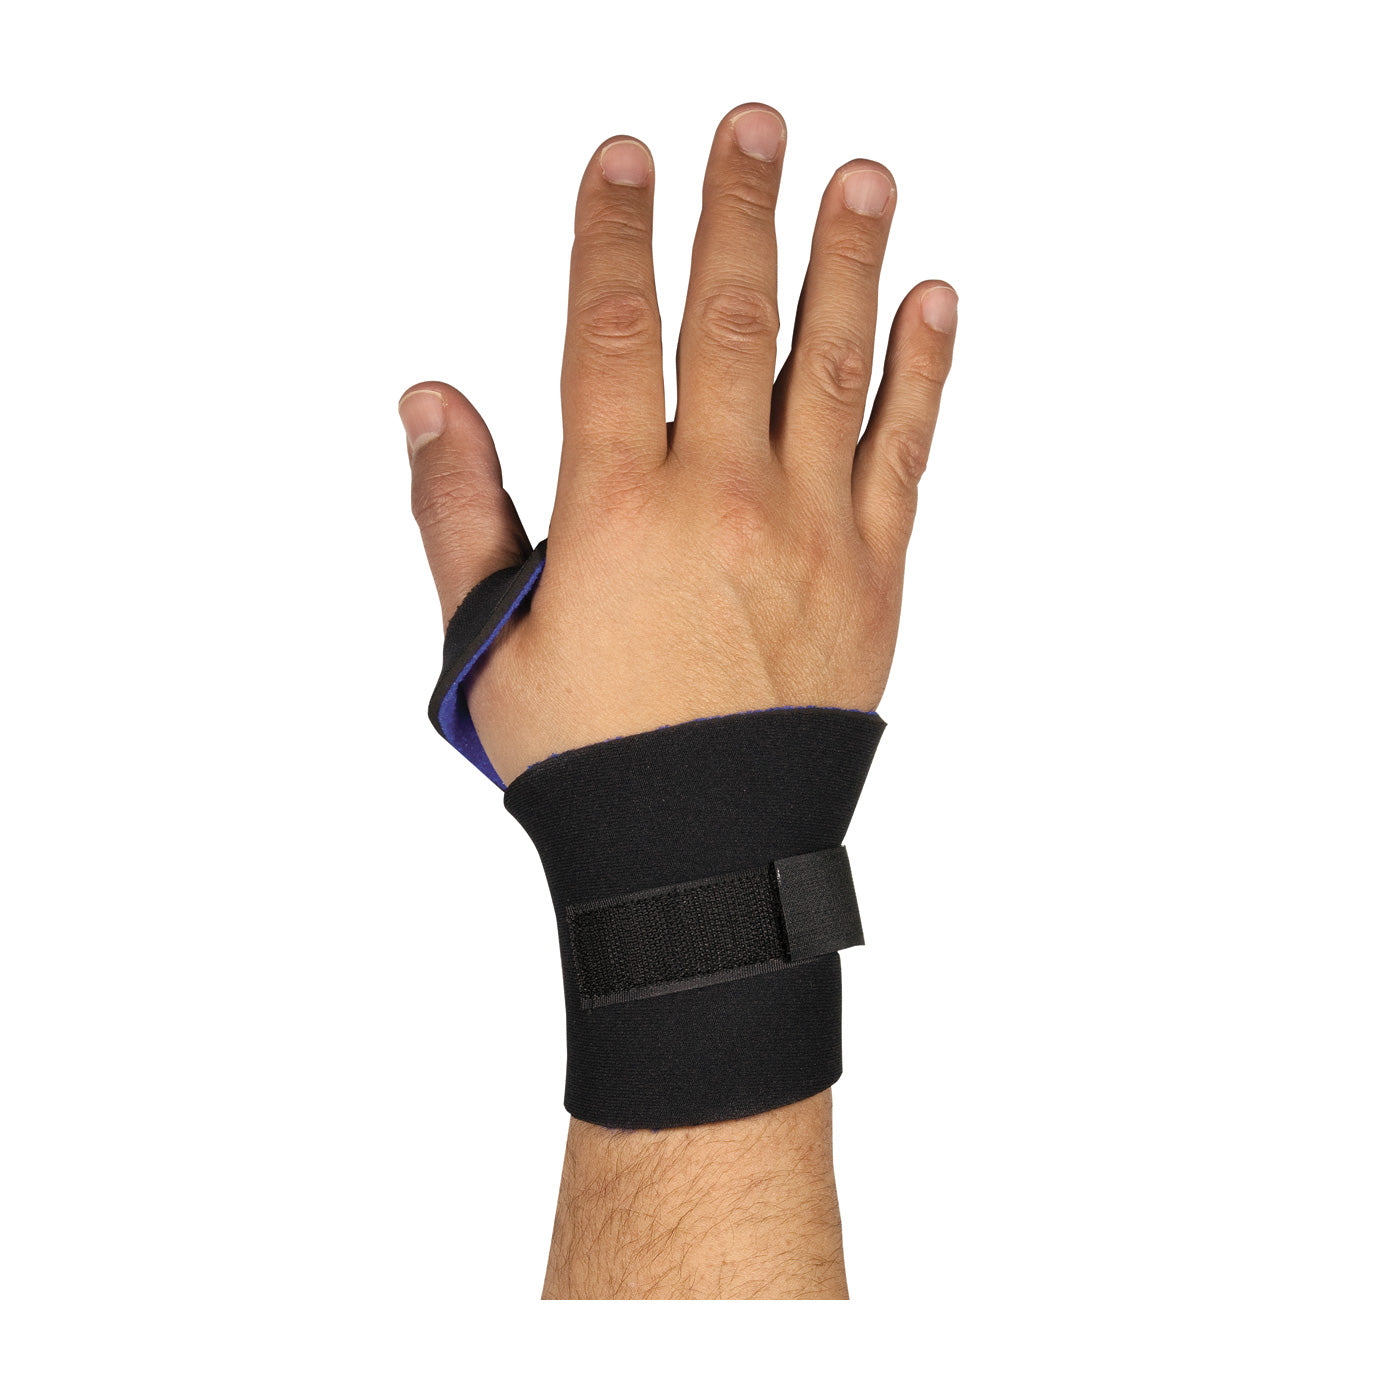 PIP 290-9015 Light Neoprene Wrist Support